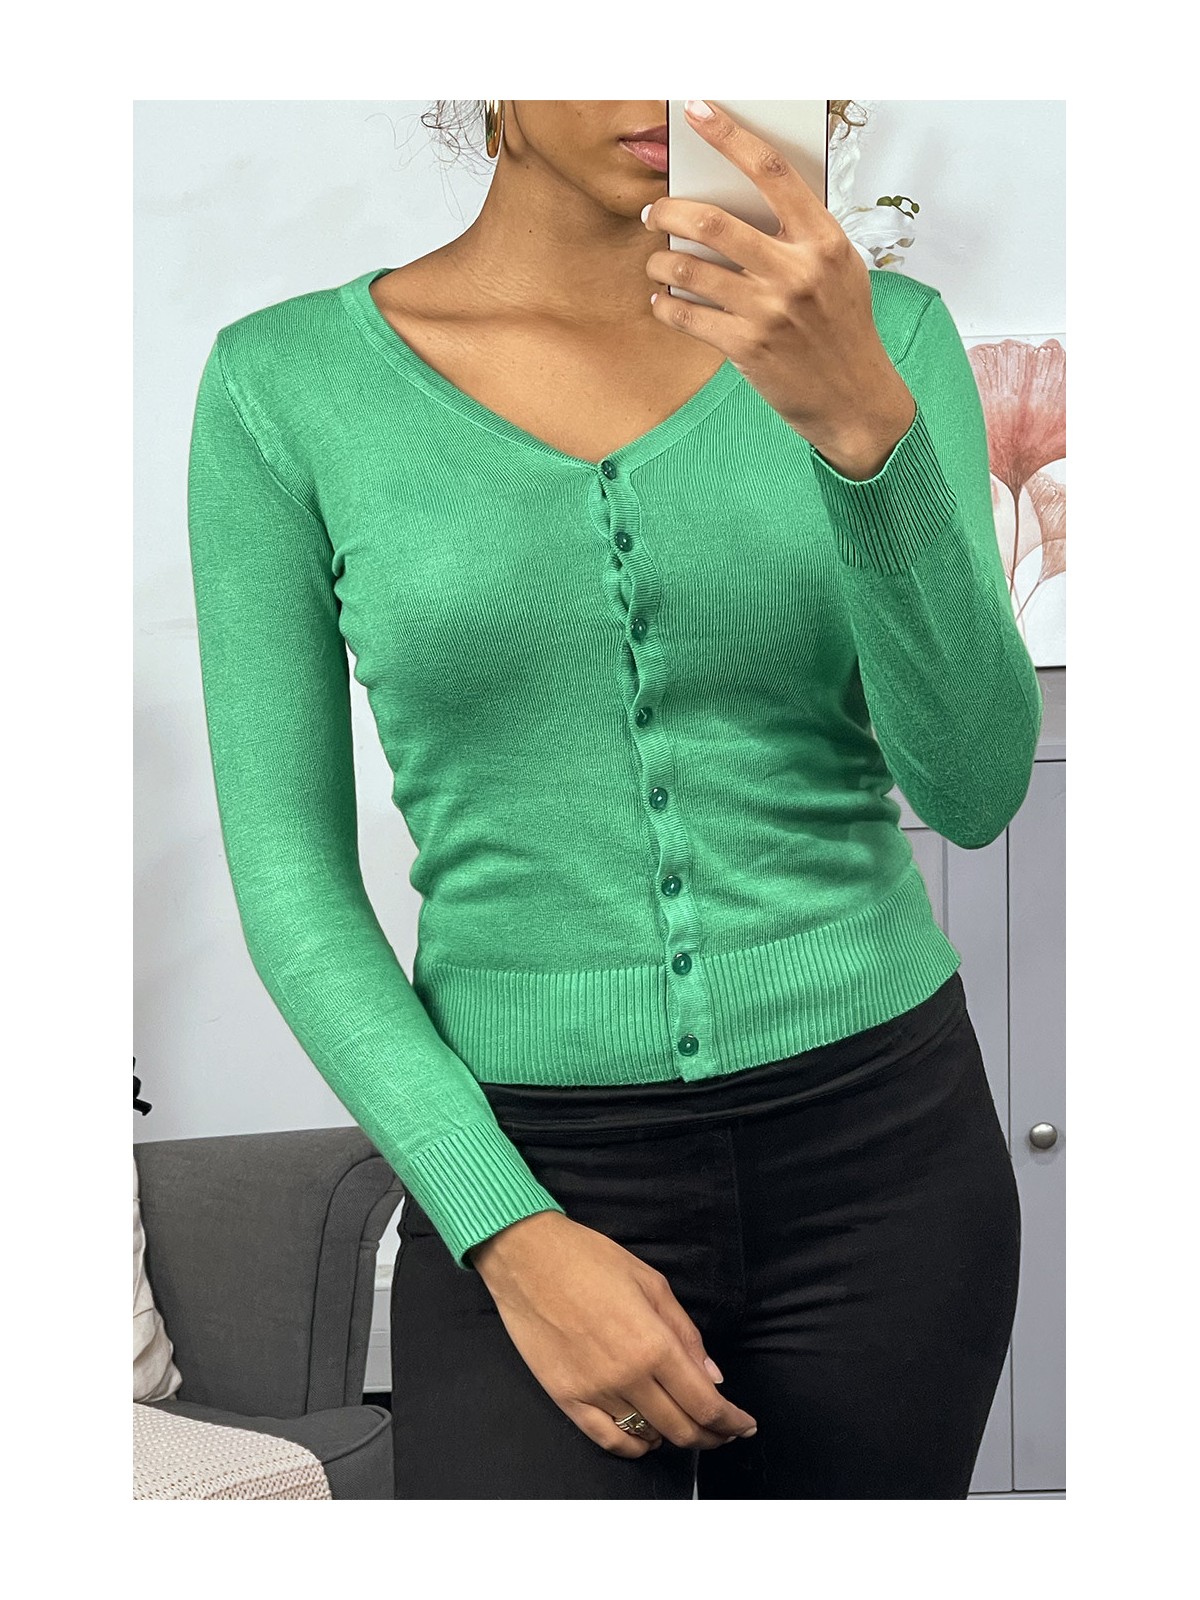 Gilet vert clair en maille tricot très extensible, l'incontournable classique - 1